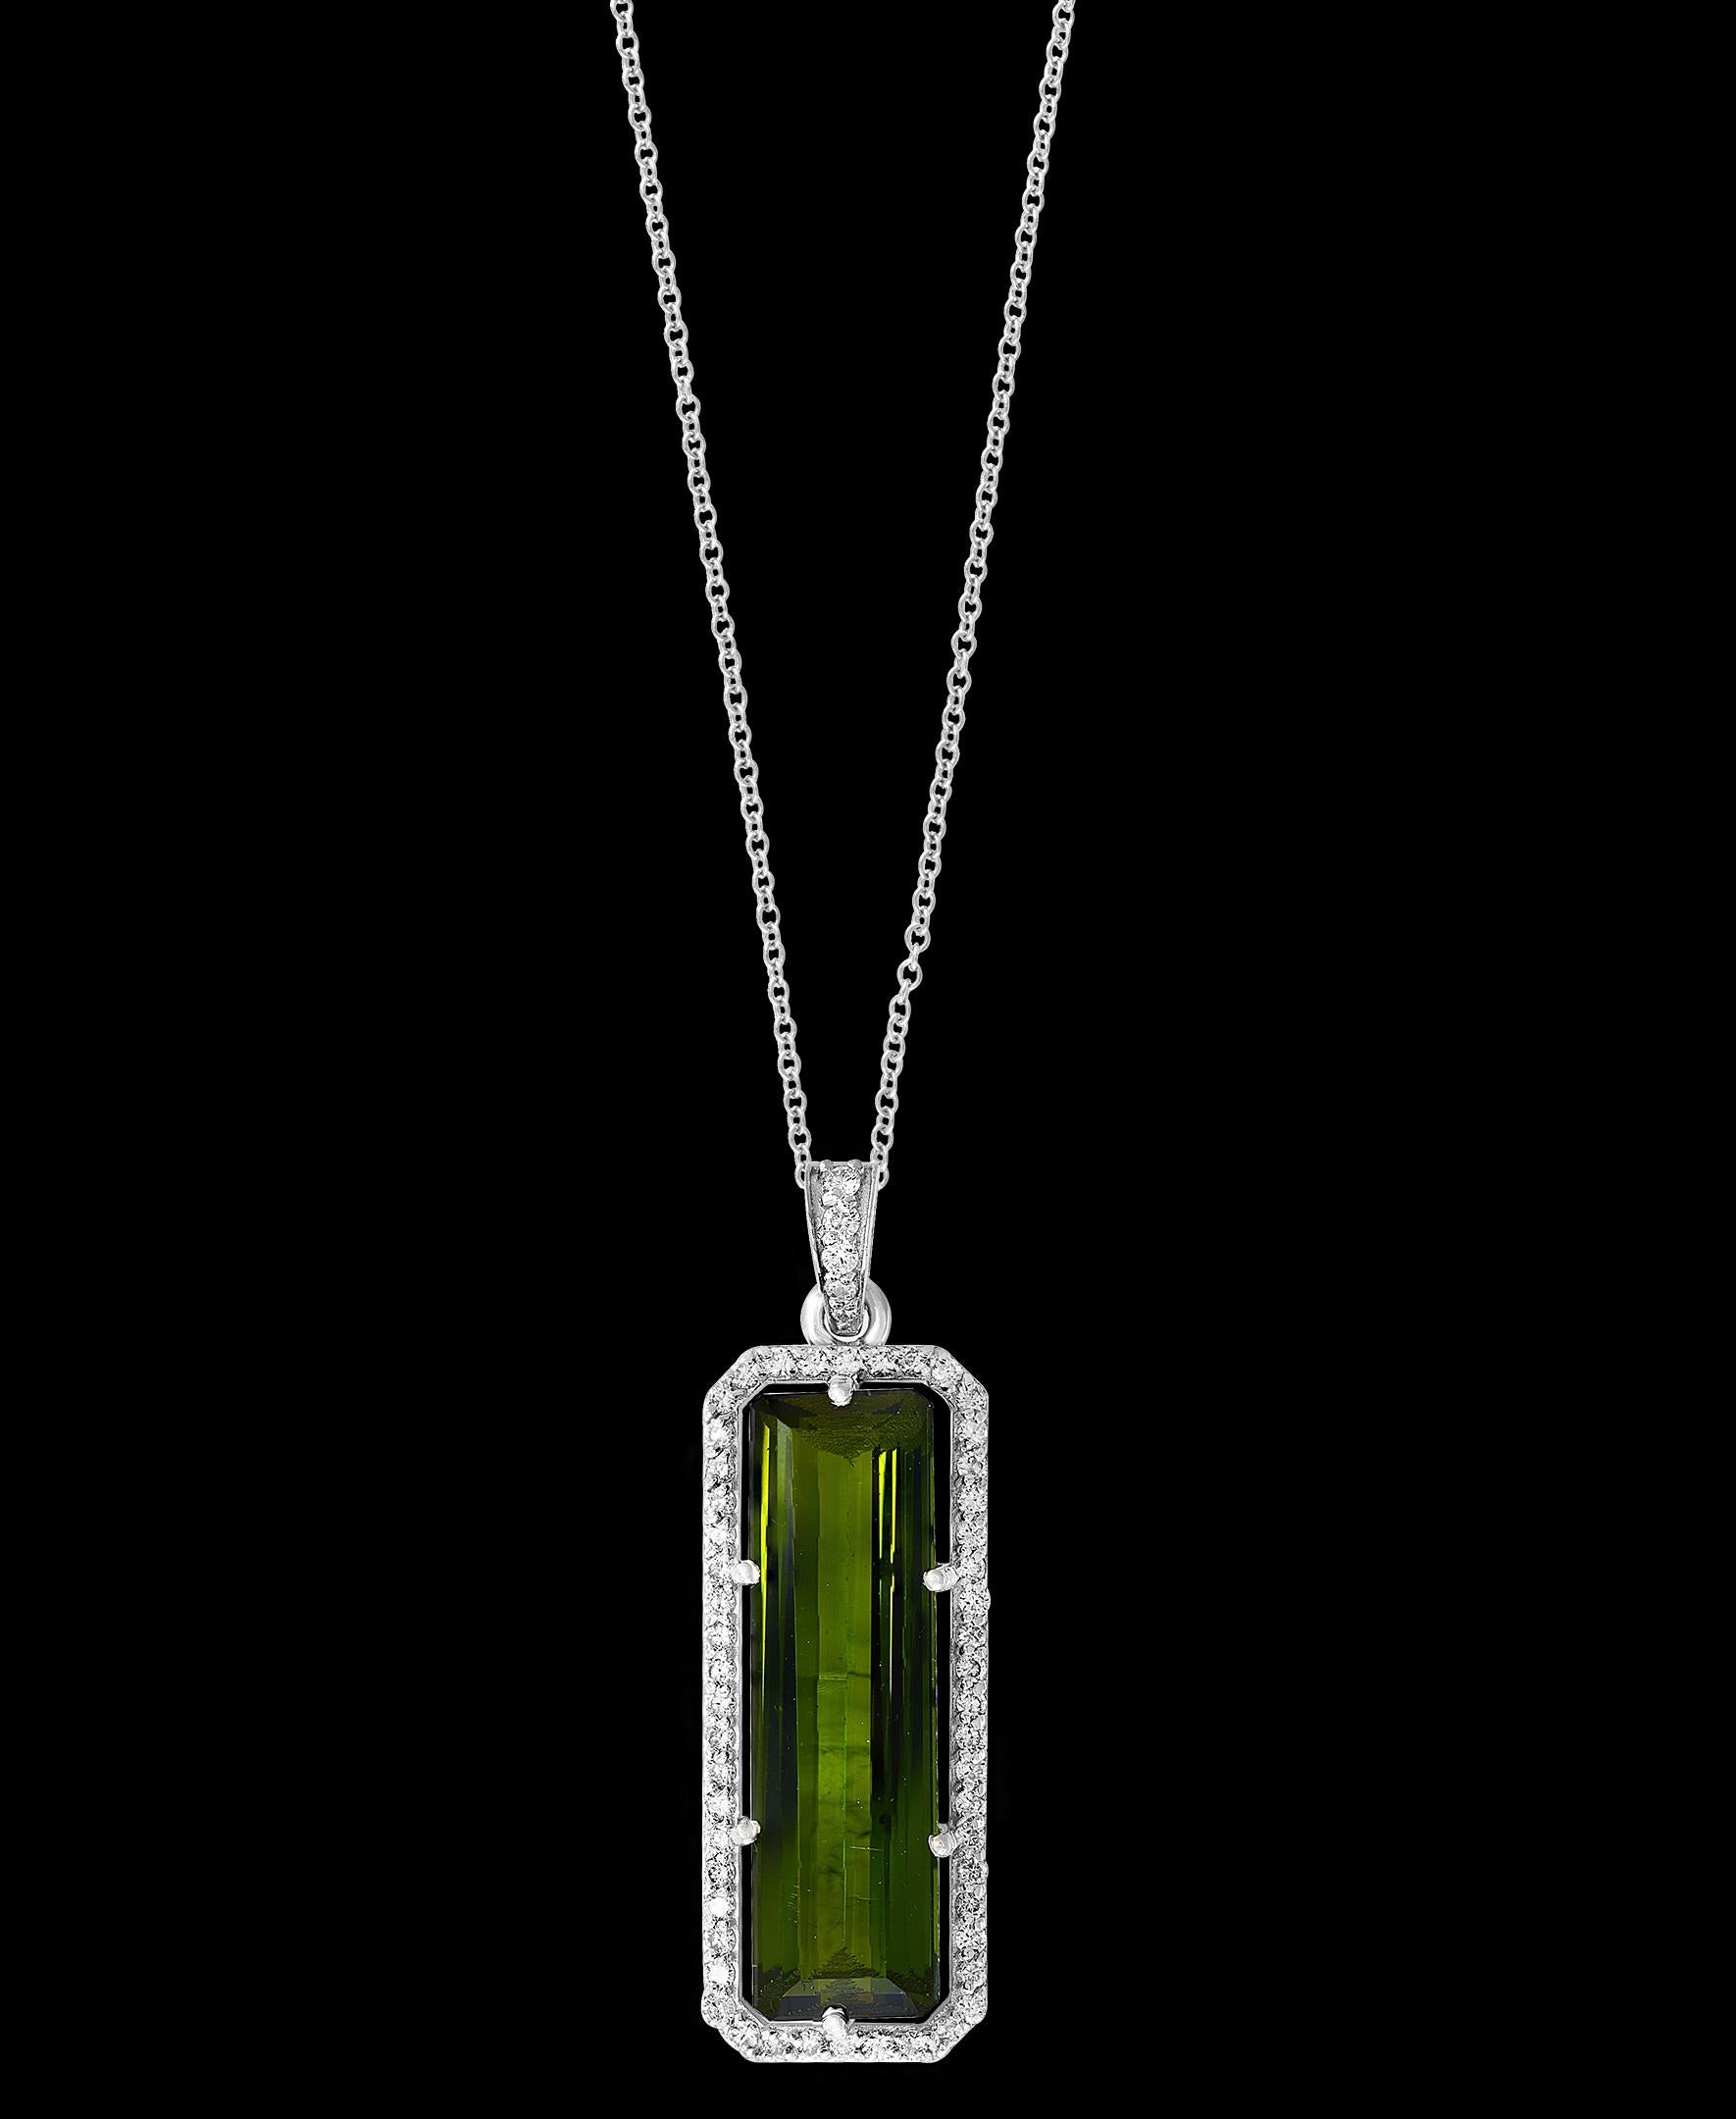 15 Carat Green Tourmaline and 1.1 Carat Diamond Pendant / Necklace 18 Karat Gold 1